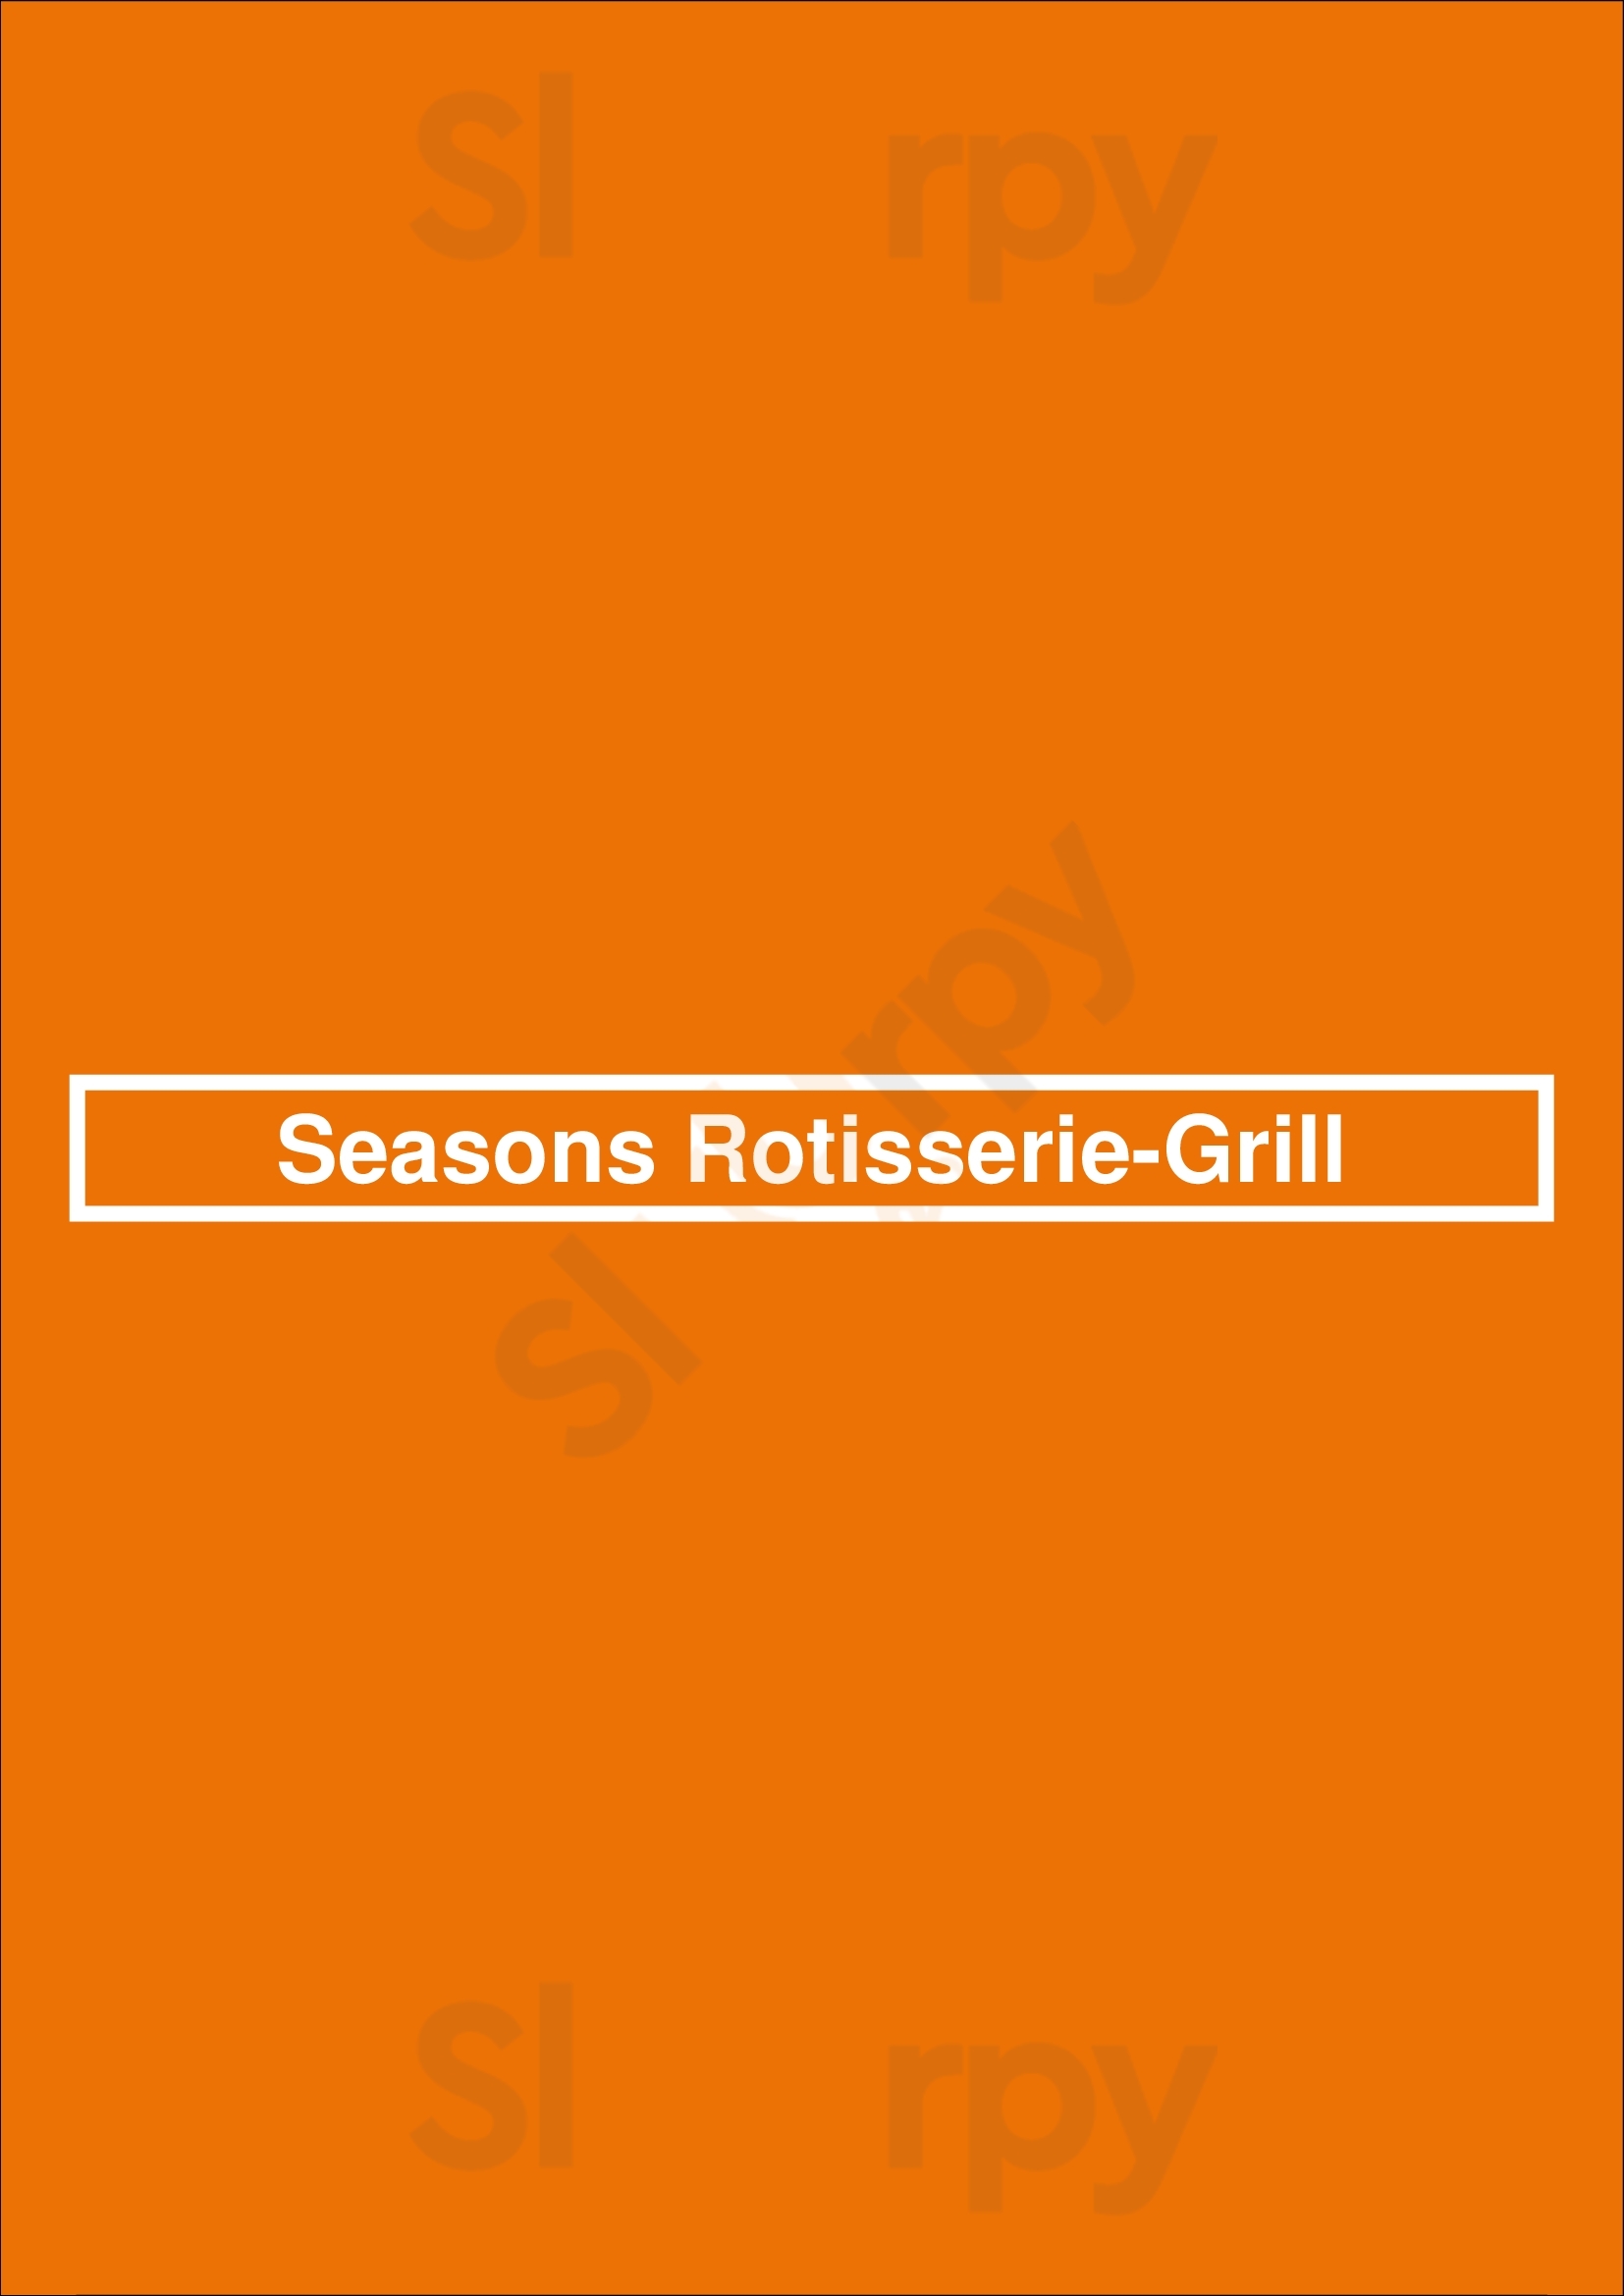 Seasons Rotisserie & Grill Albuquerque Menu - 1